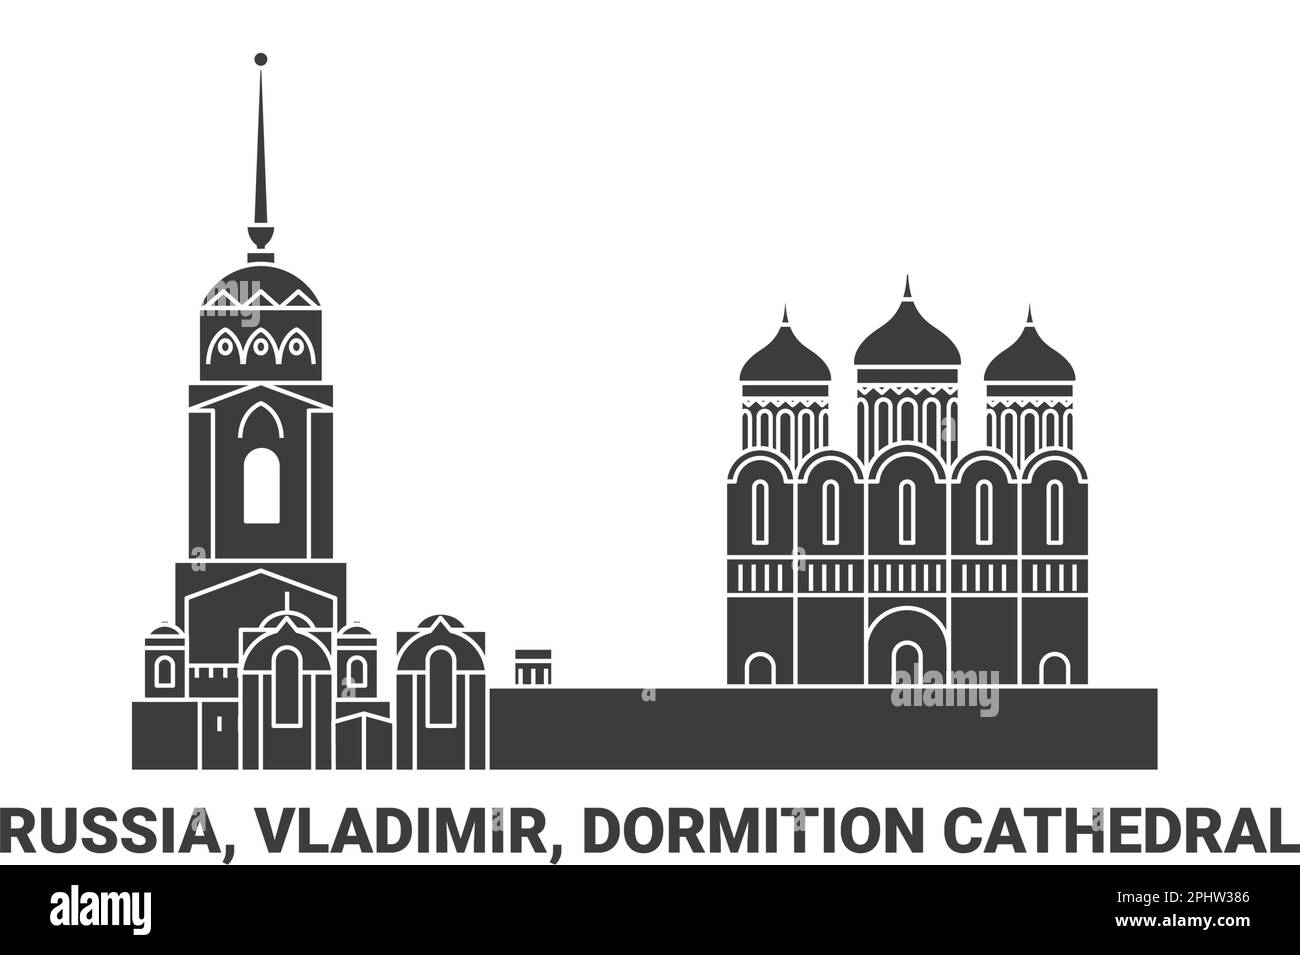 Russia, Vladimir, Dormition Cathedral, travel landmark vector illustration Stock Vector